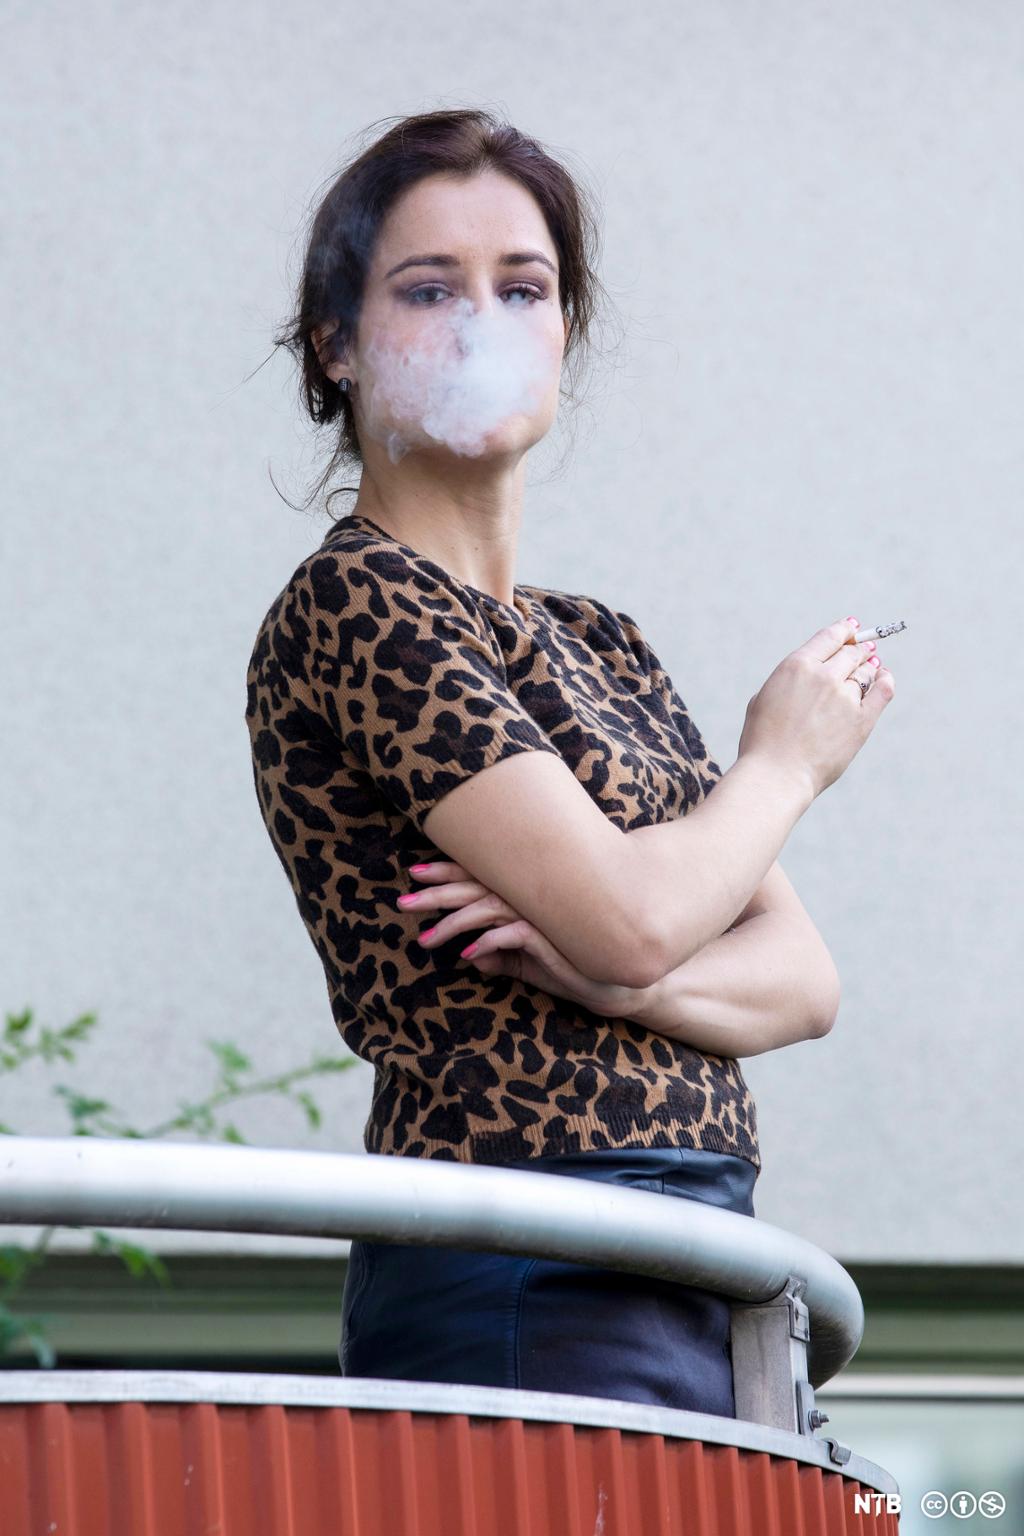 En kvinne står på balkongen og røyker. Hun blåser røyk mot fotografen. Foto.